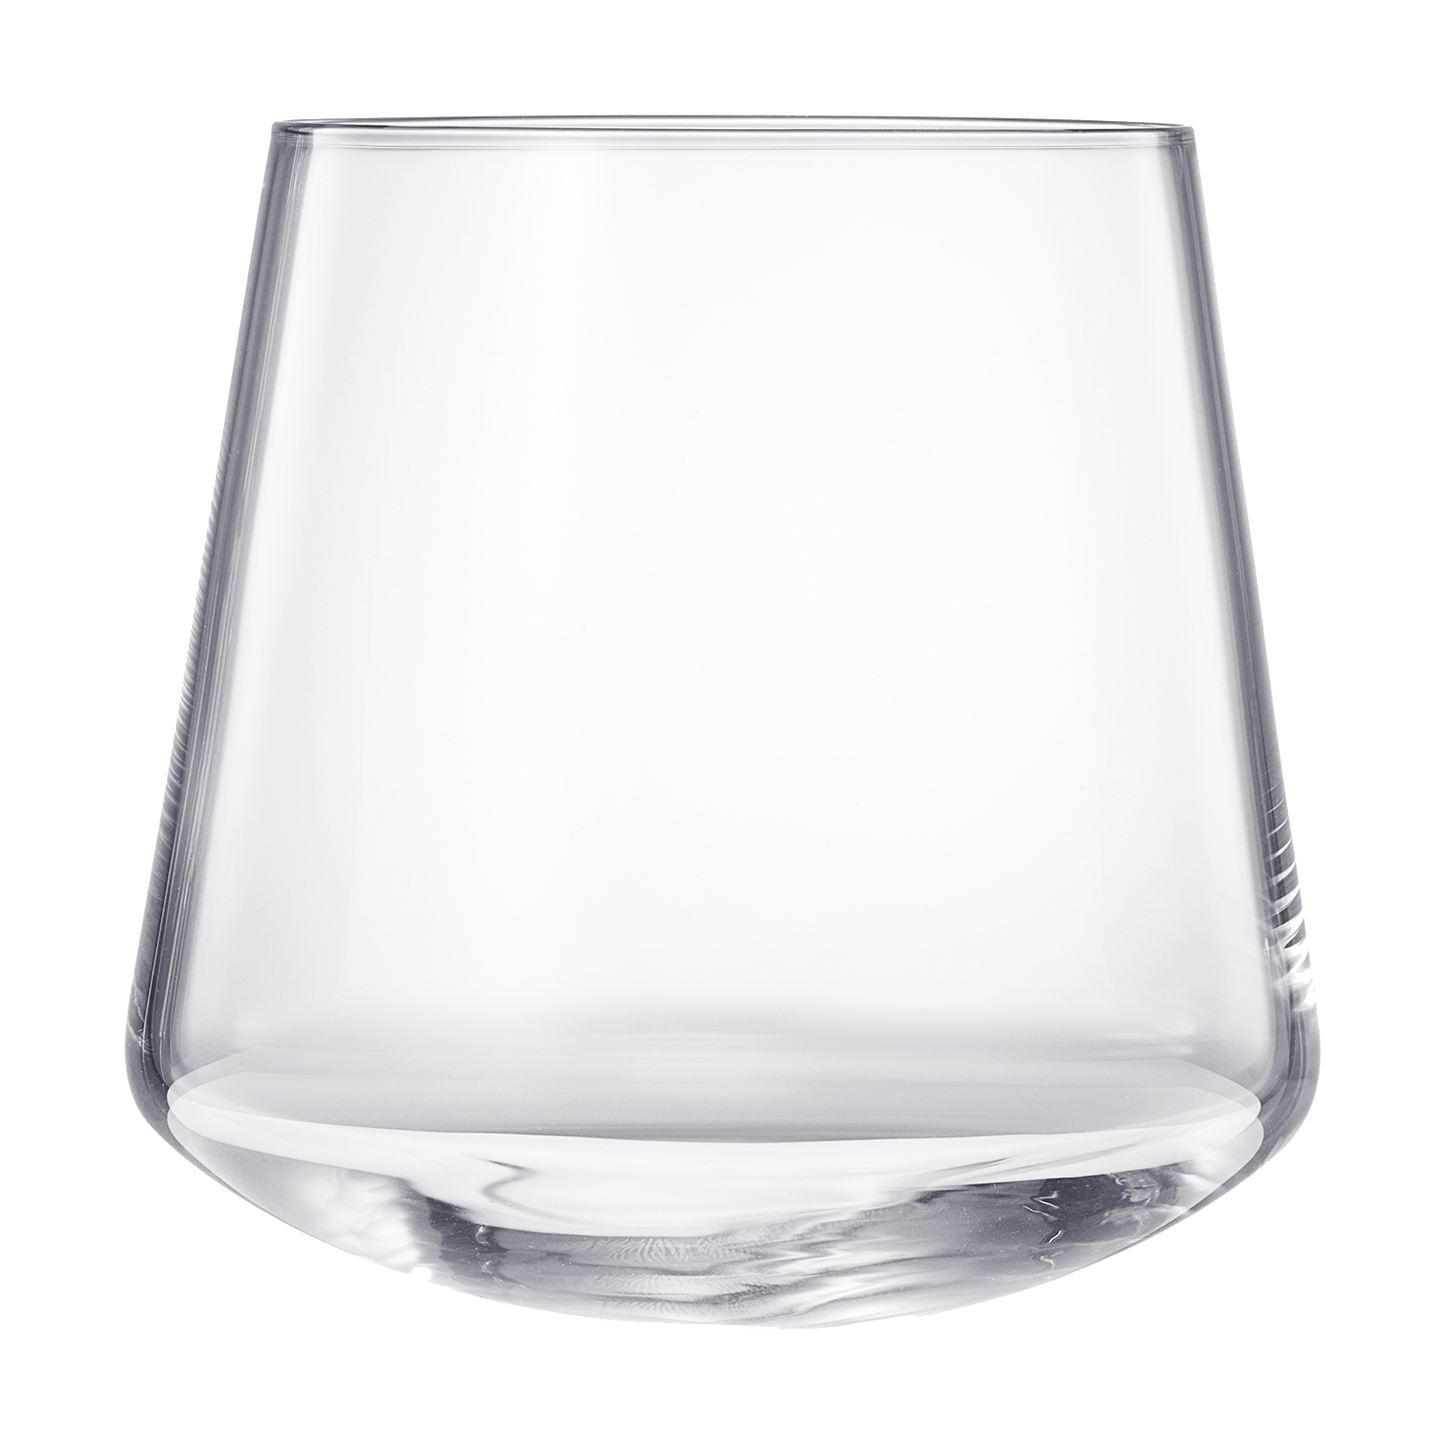 Classica Un-Spillable Wine Glassware, Set of 2